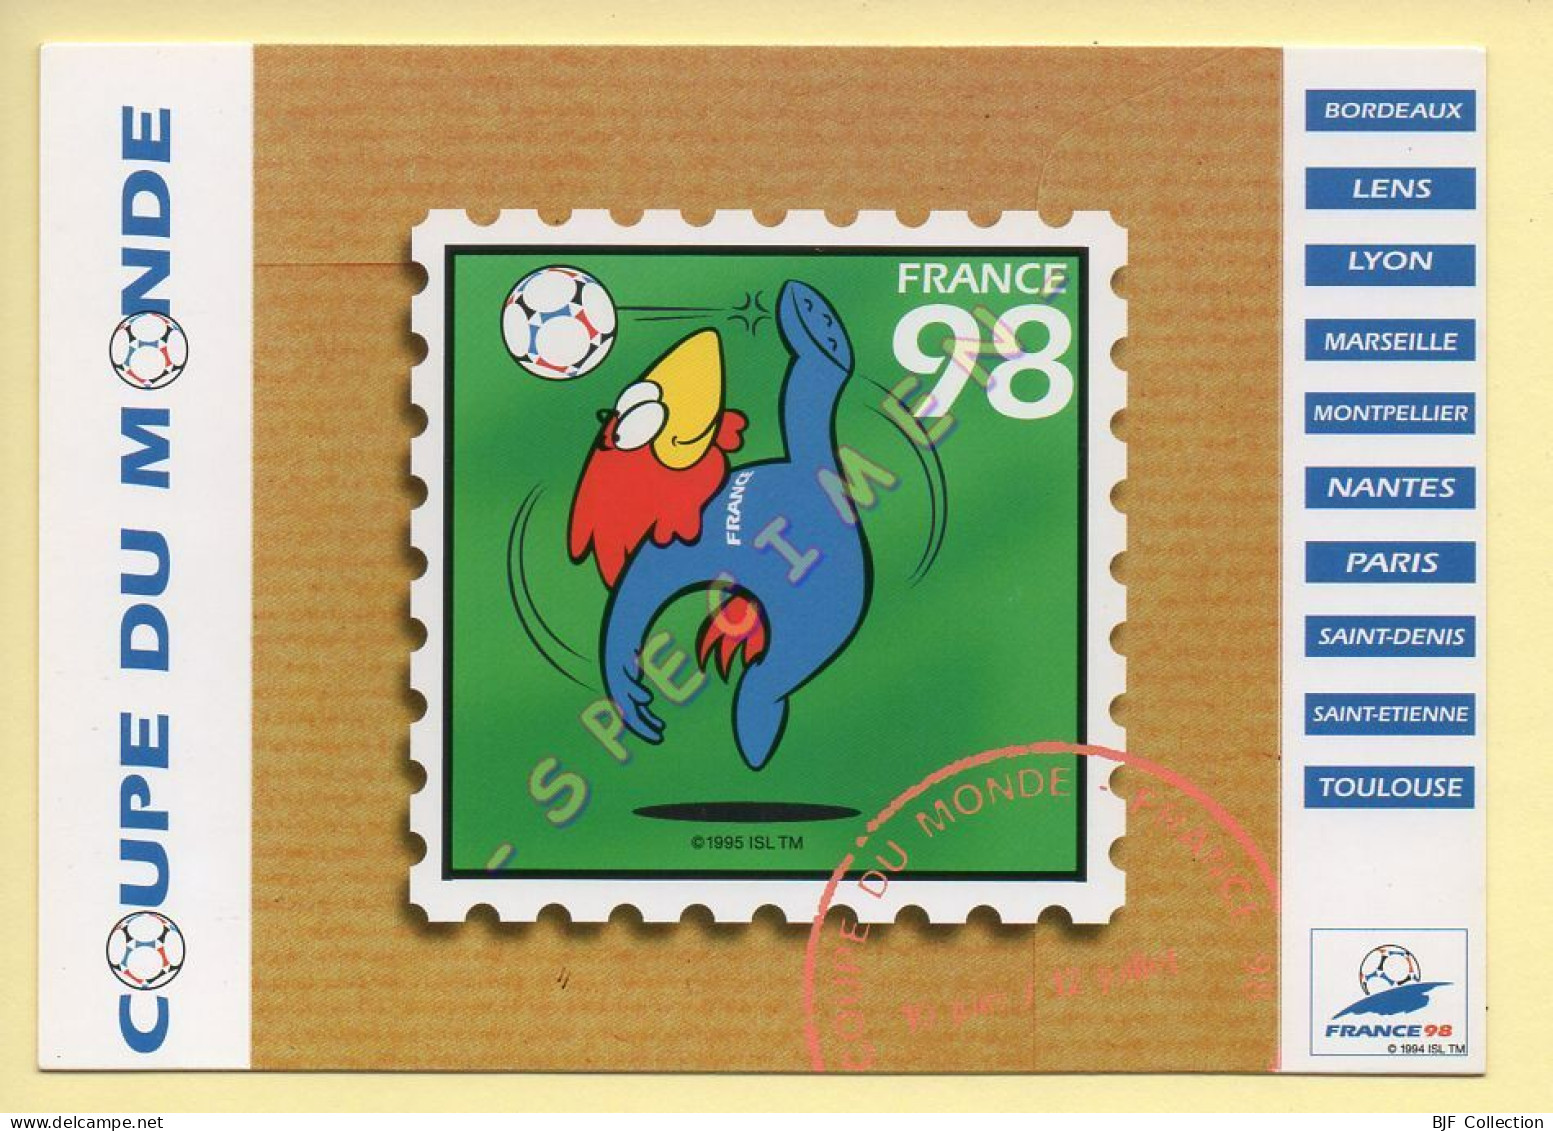 FRANCE 98 – Carte Collector Autocollante N° 11/18 – FOOTIX – Coupe Du Monde (voir Scan Recto/verso) - Soccer